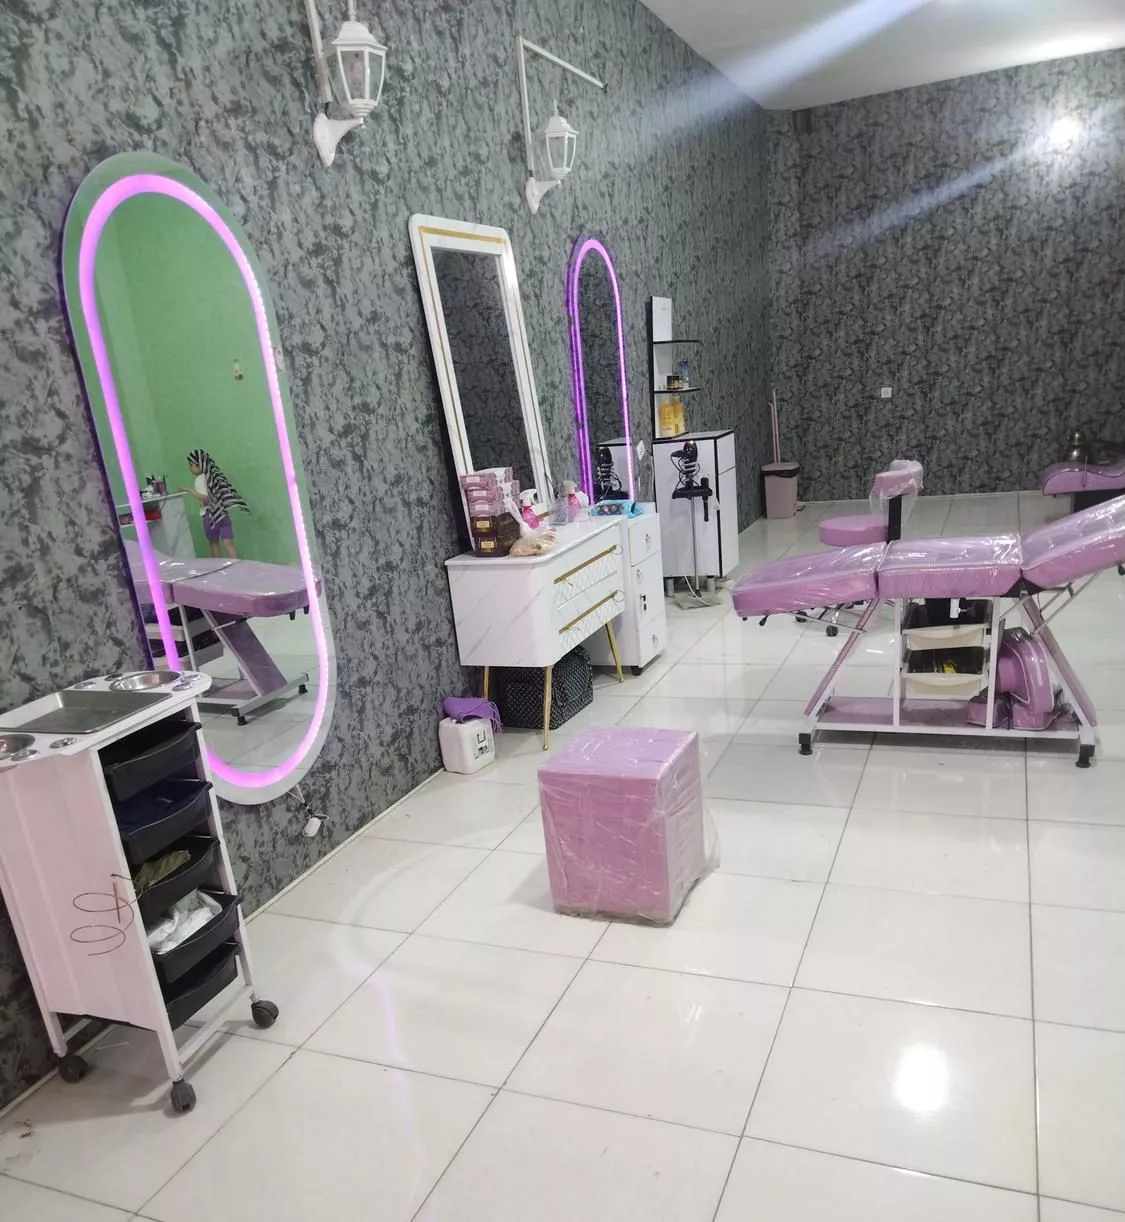 واگذاری آرایشگاه زنانه با وسایل